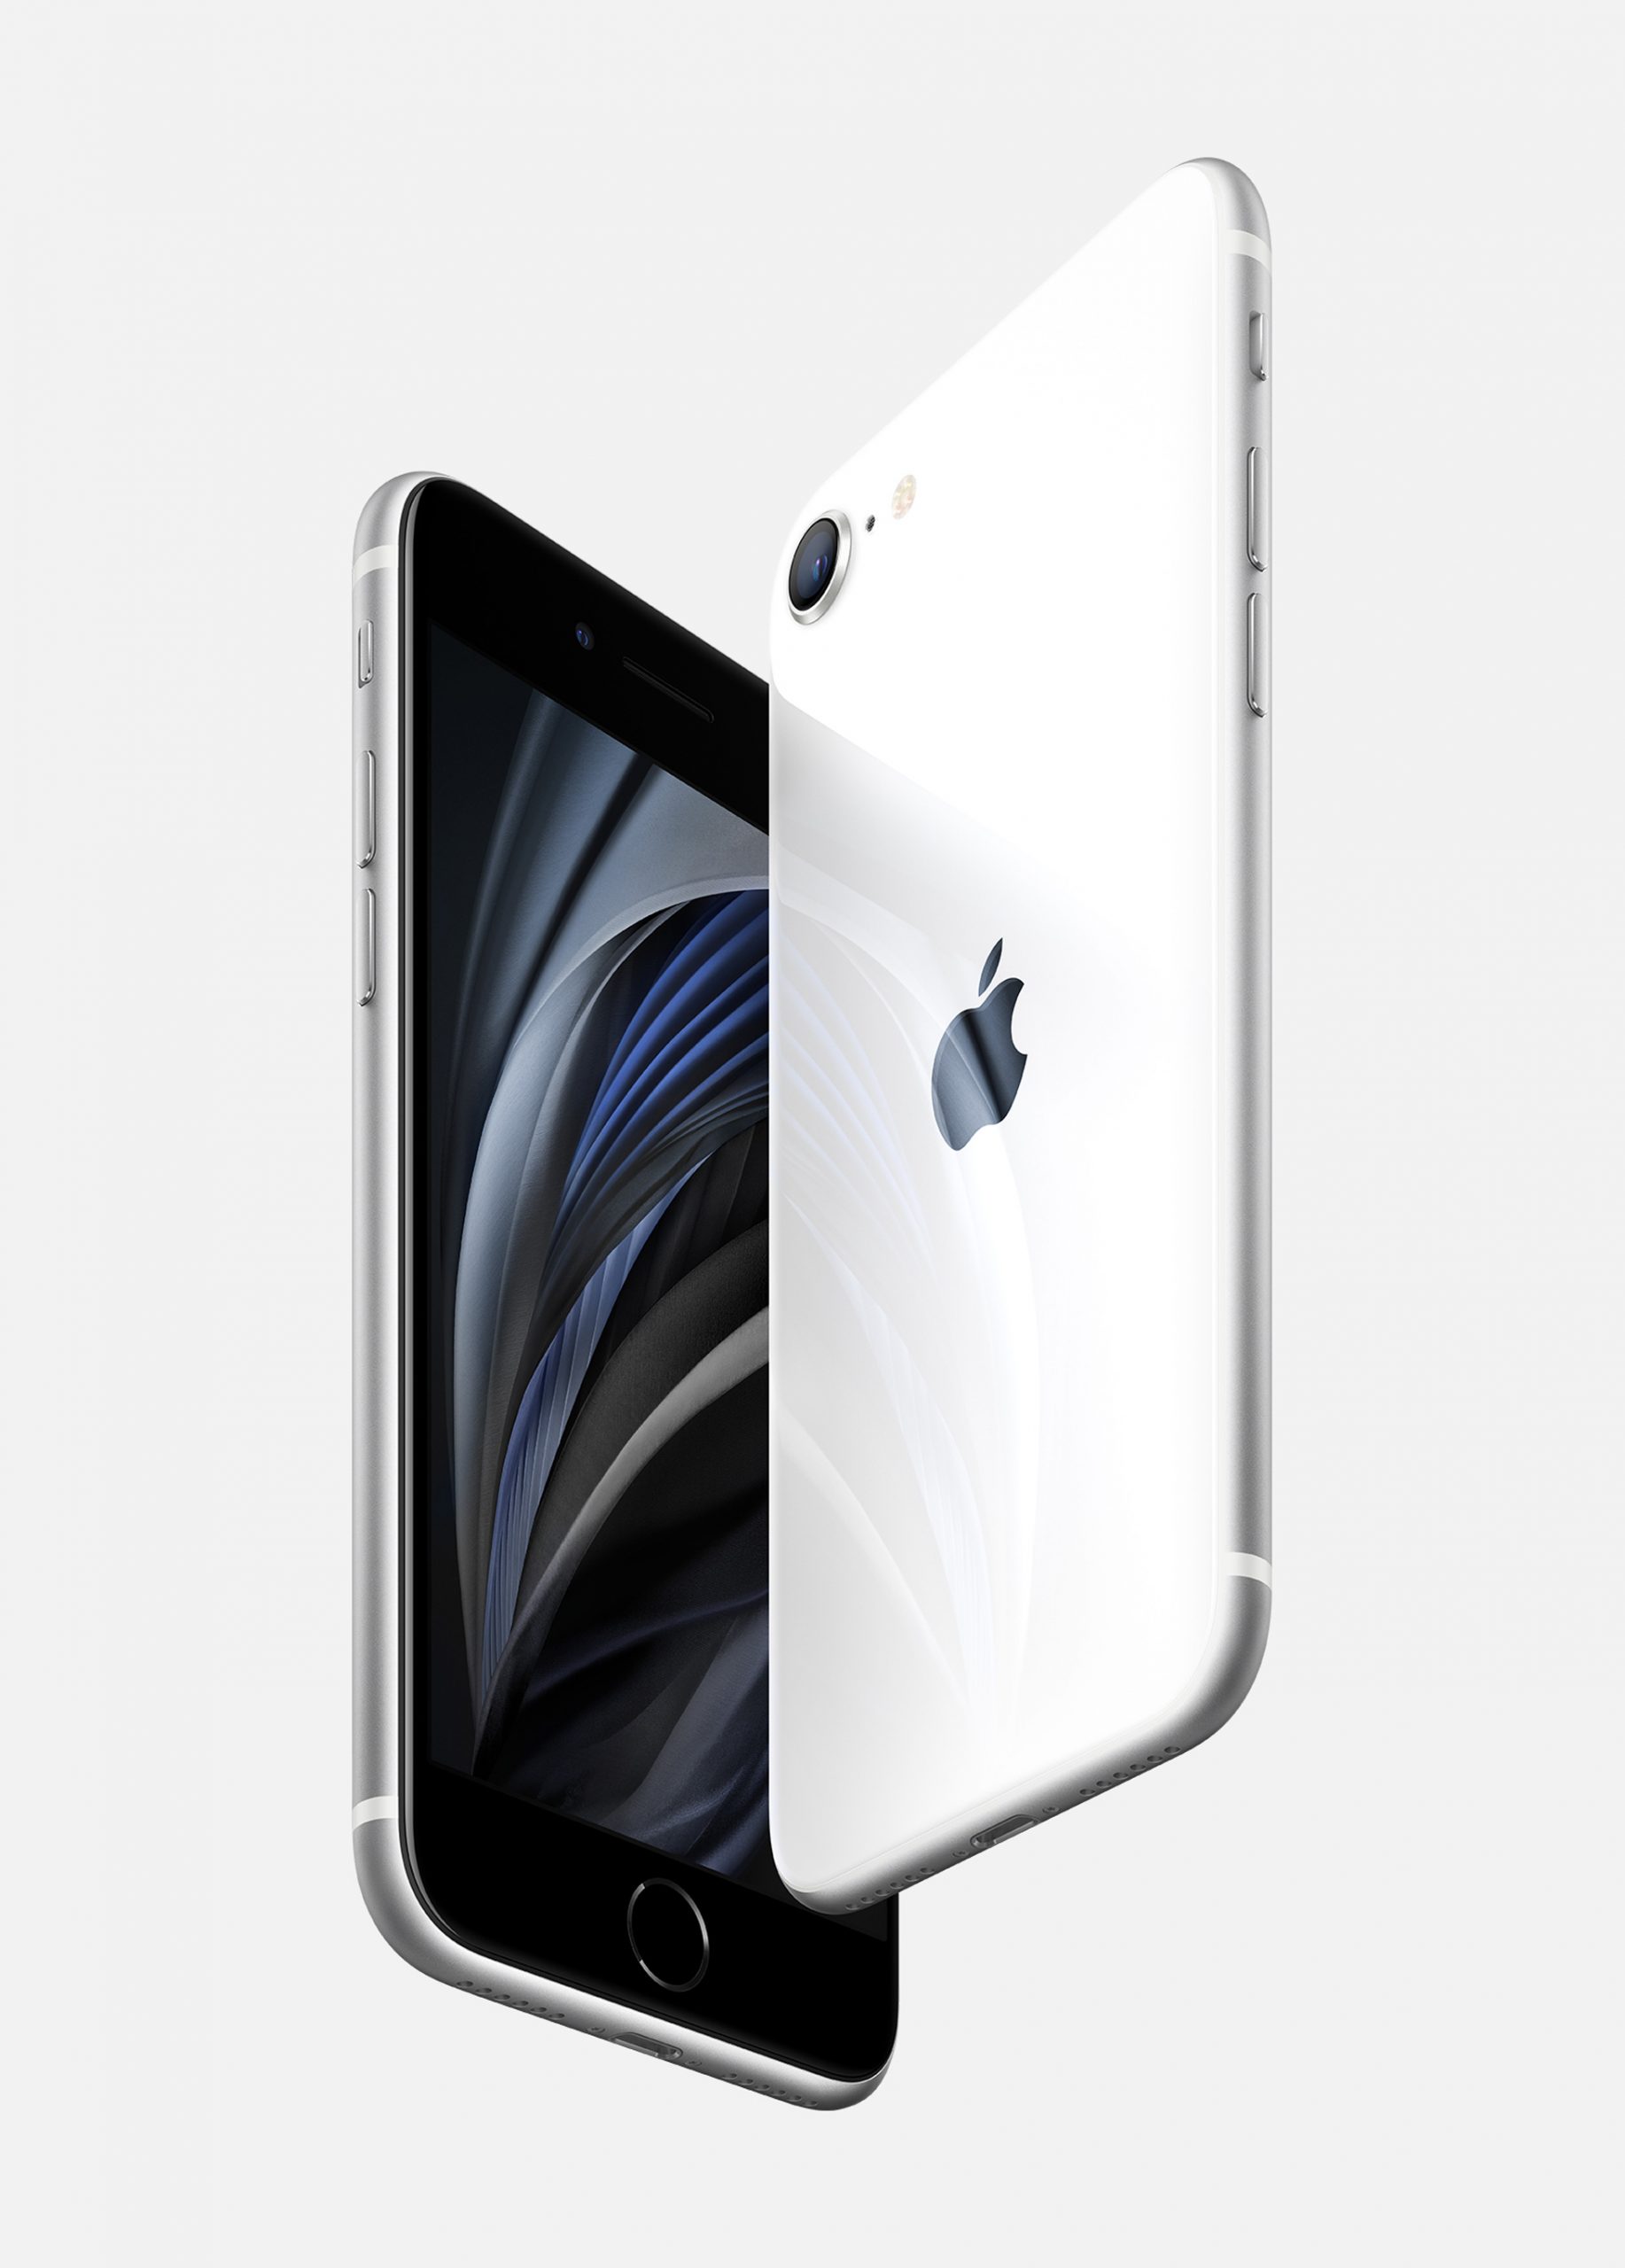 Apple ra mắt iPhone SE 2020, kiểu dáng iPhone 8, sử dụng chip A13 Bionic